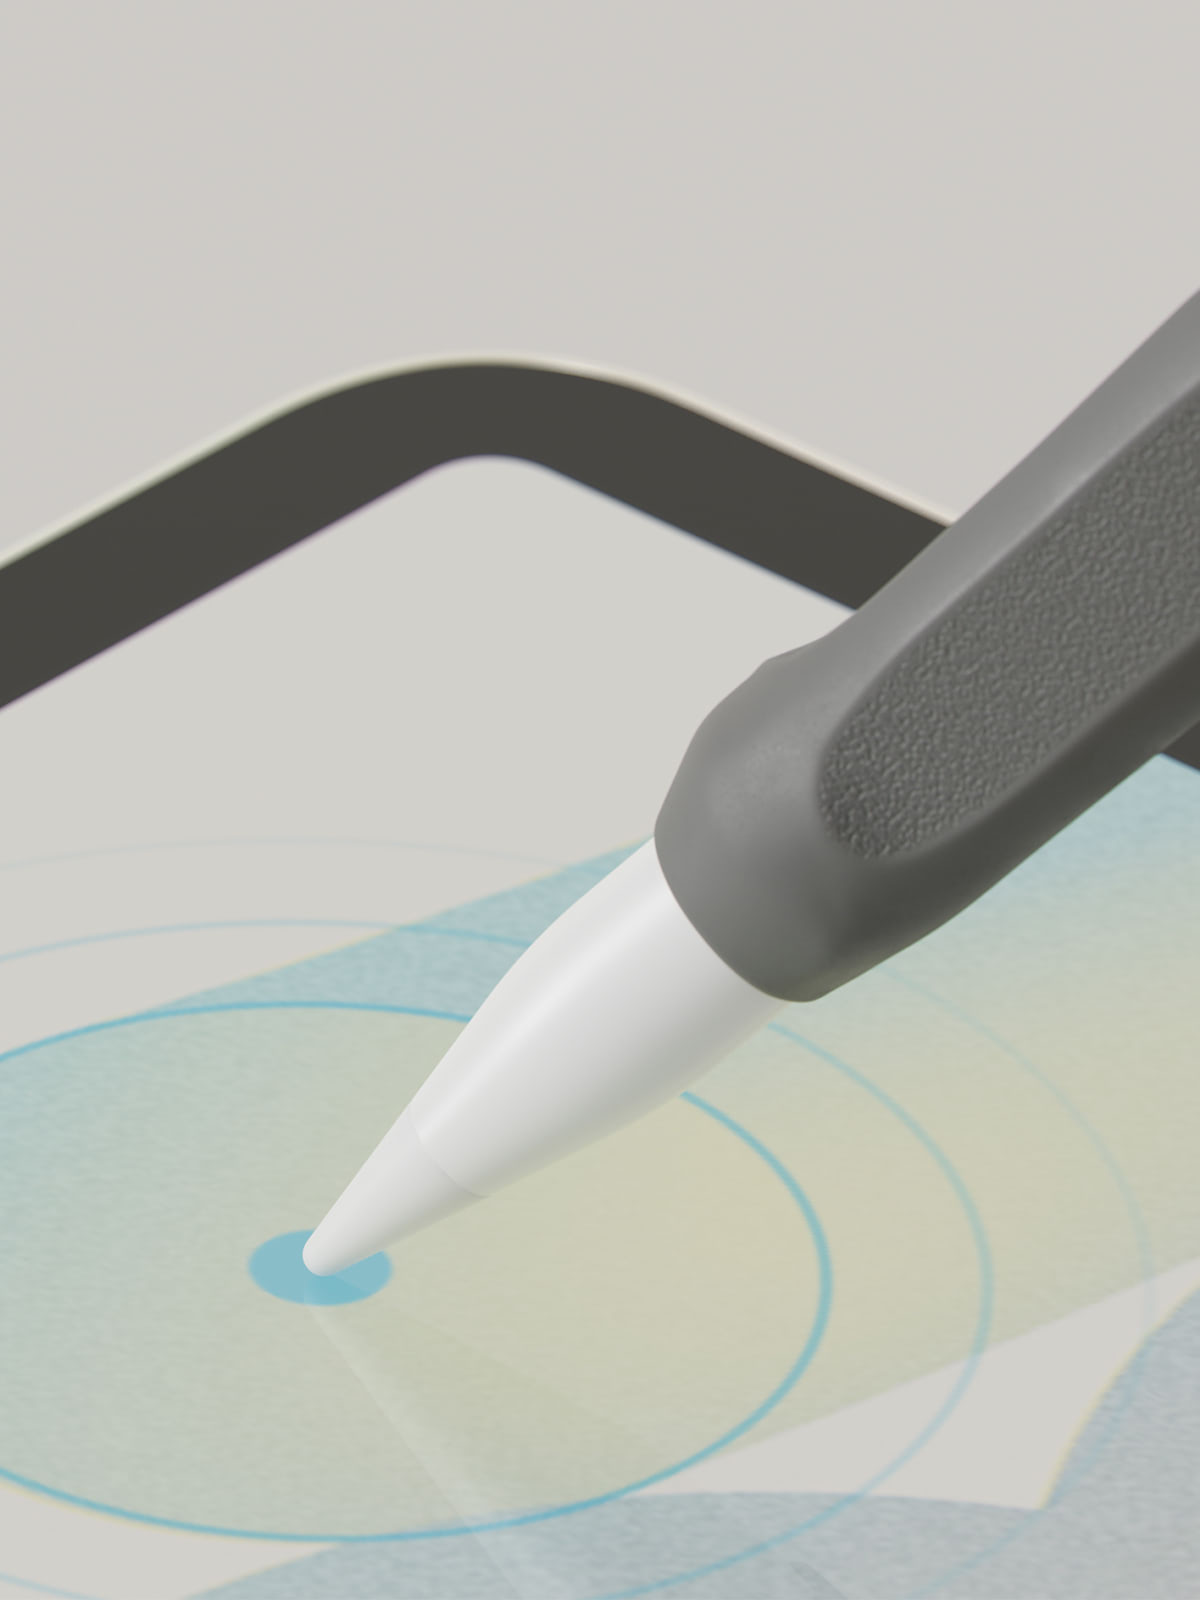 New Paperlike 2 - Make your iPad feel like paper by Jan Sapper — Kickstarter